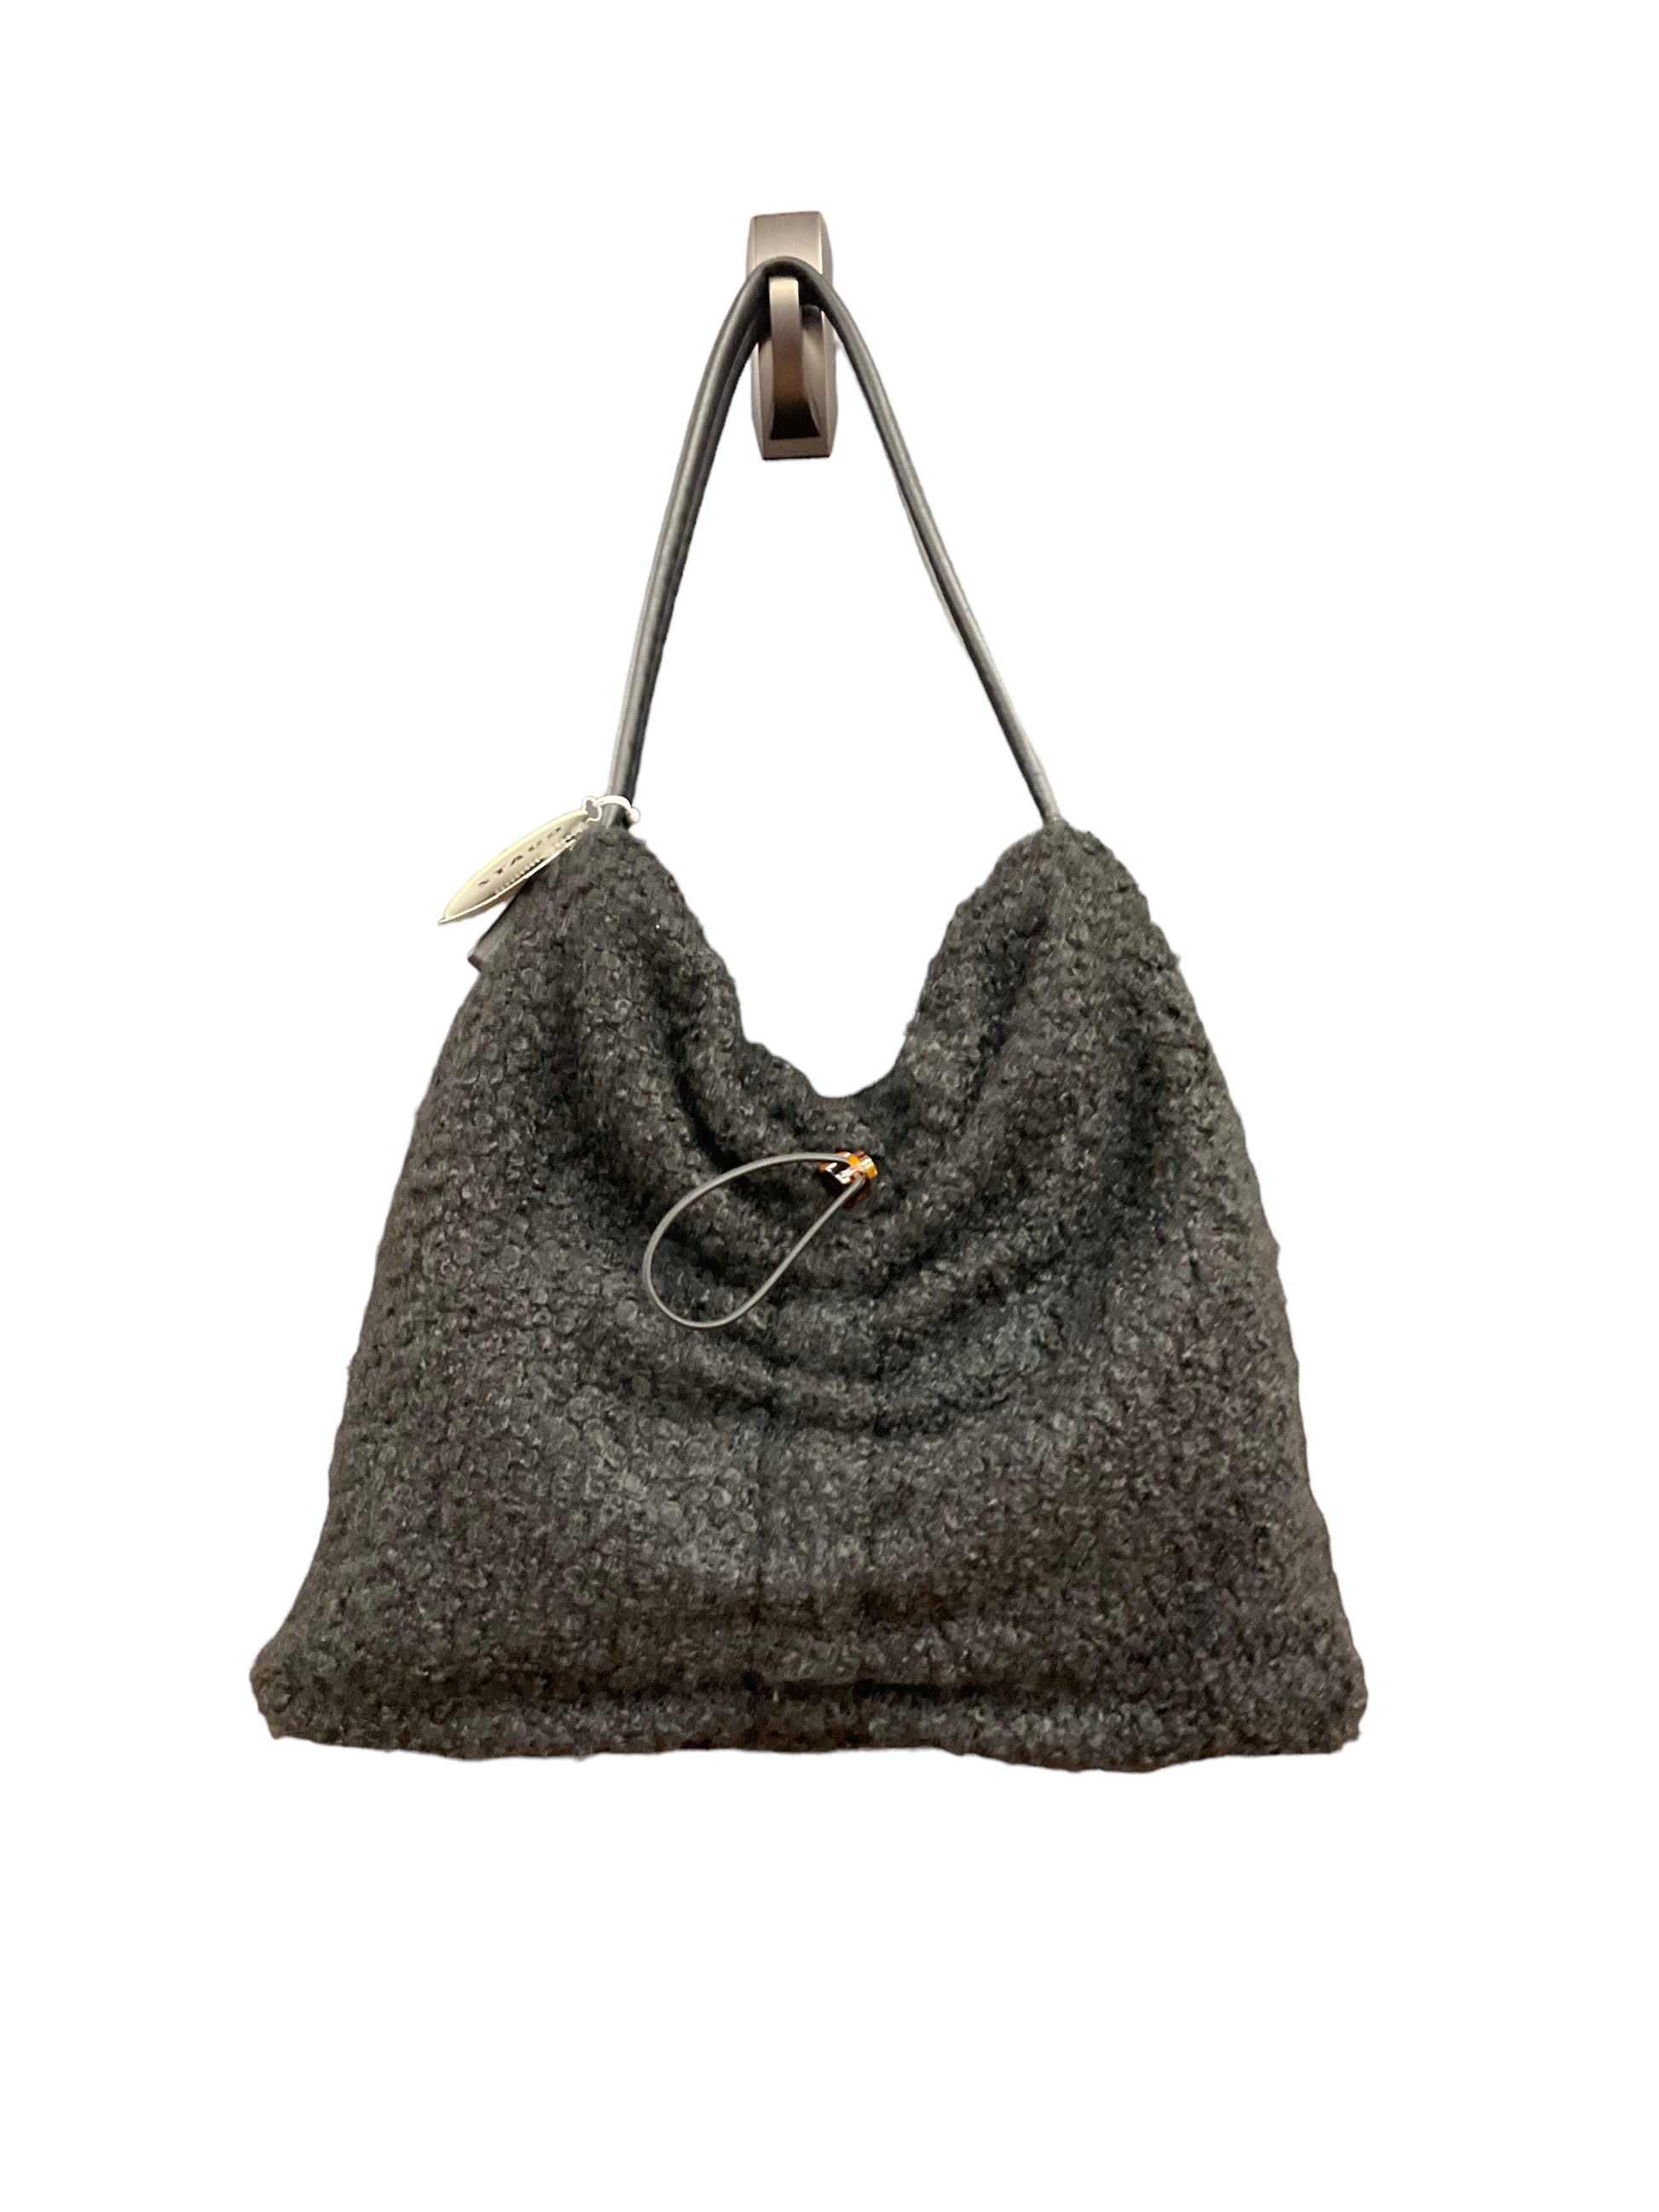 Handbag By Louis Vuitton Size: Medium – Clothes Mentor Upper Arlington OH  #105